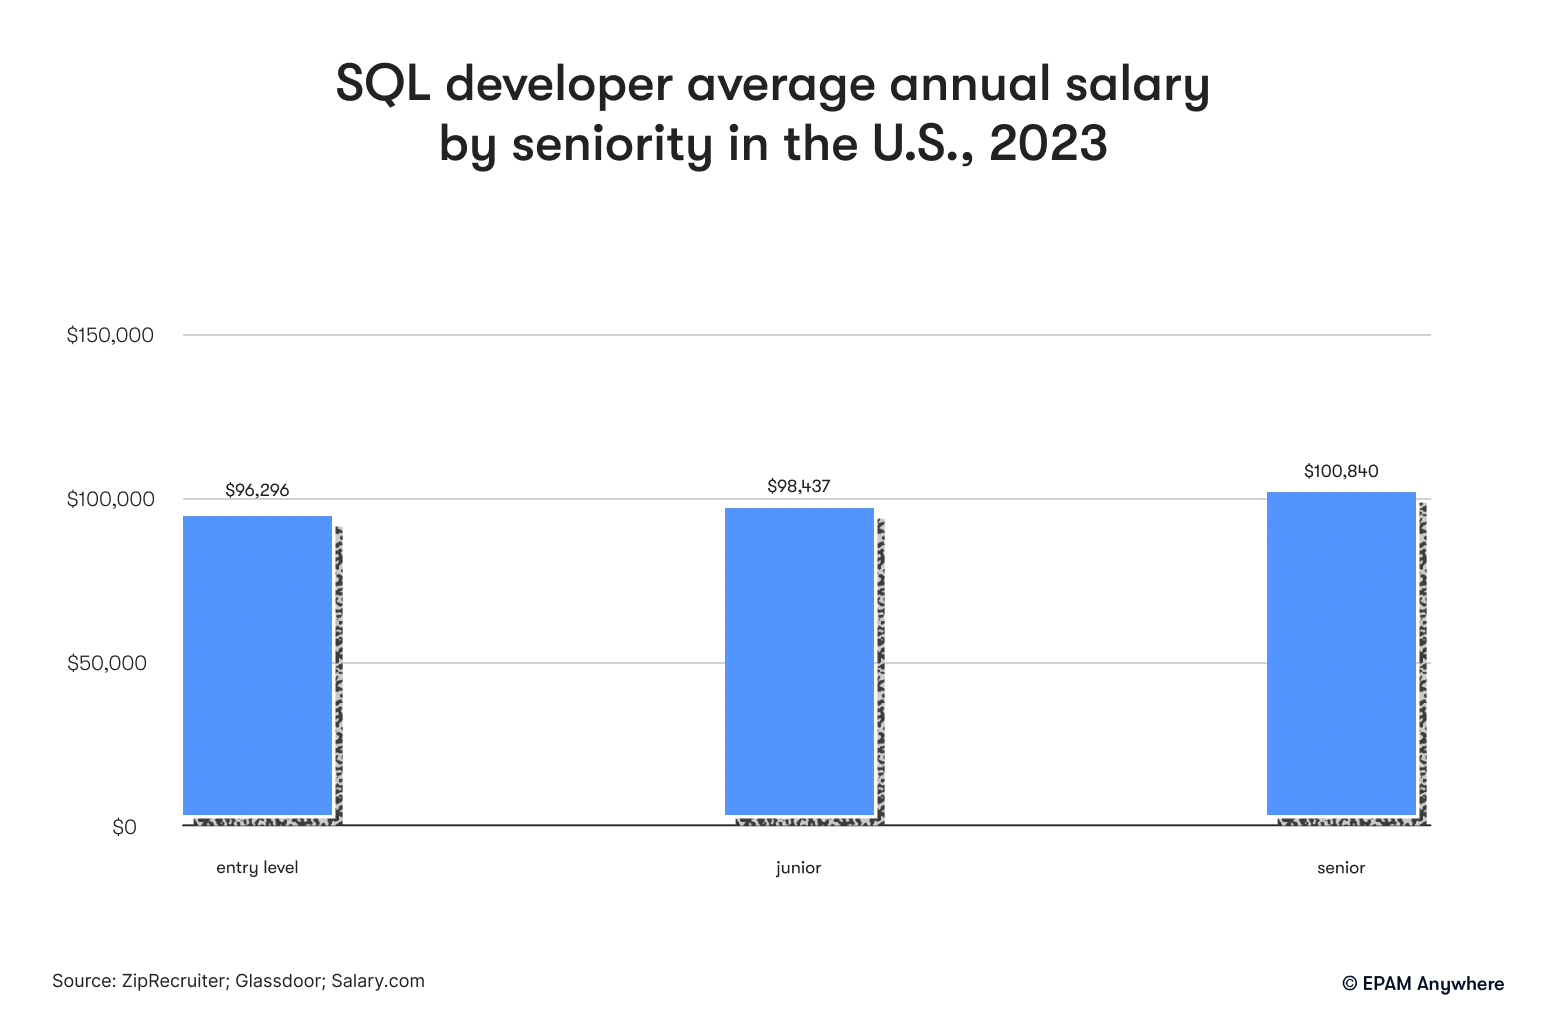 SQL developer average annual salary by seniority in the U.S., 2023